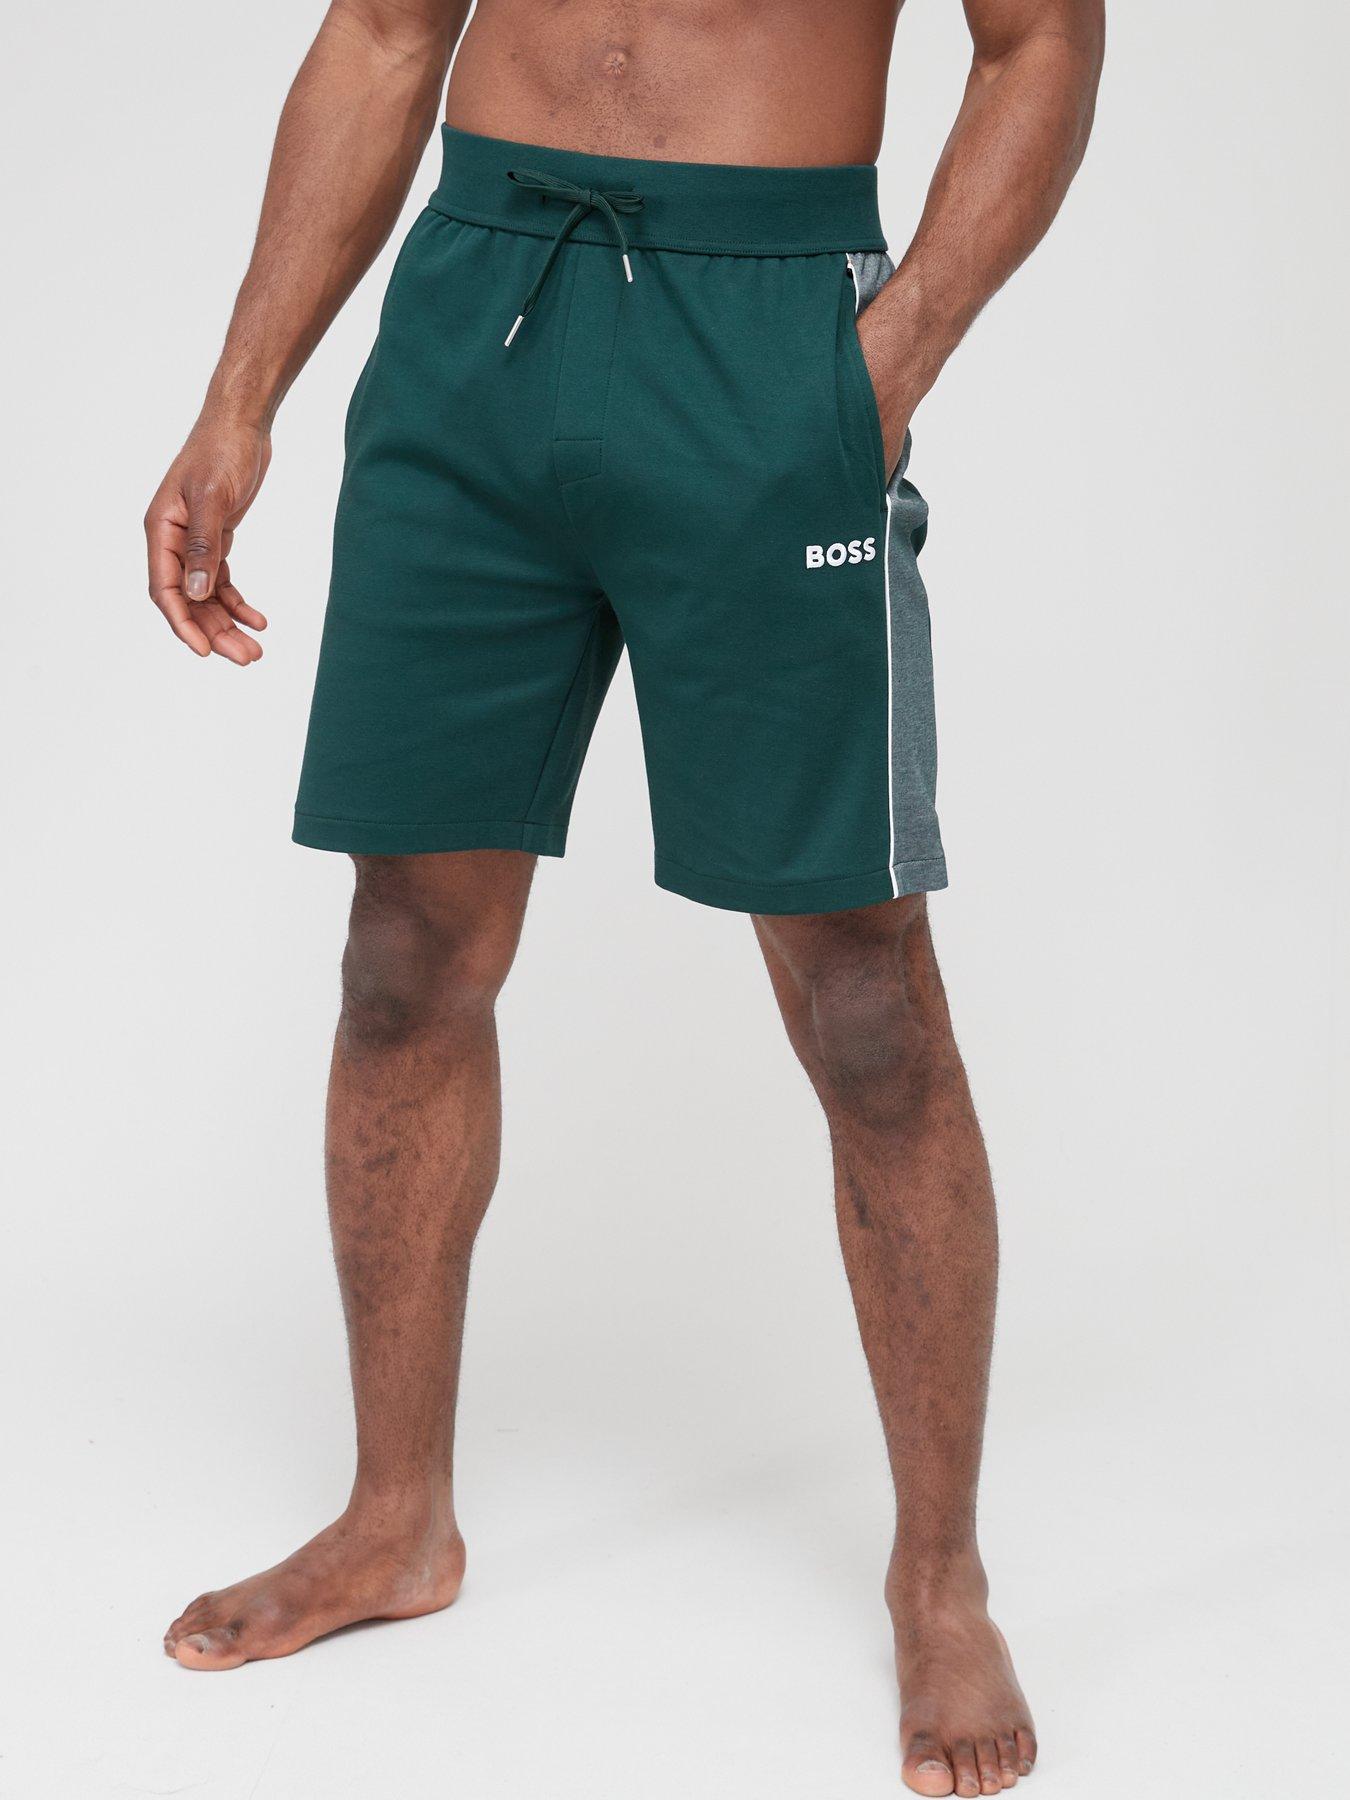 Jogger Shorts Shorts | Men | Very Ireland